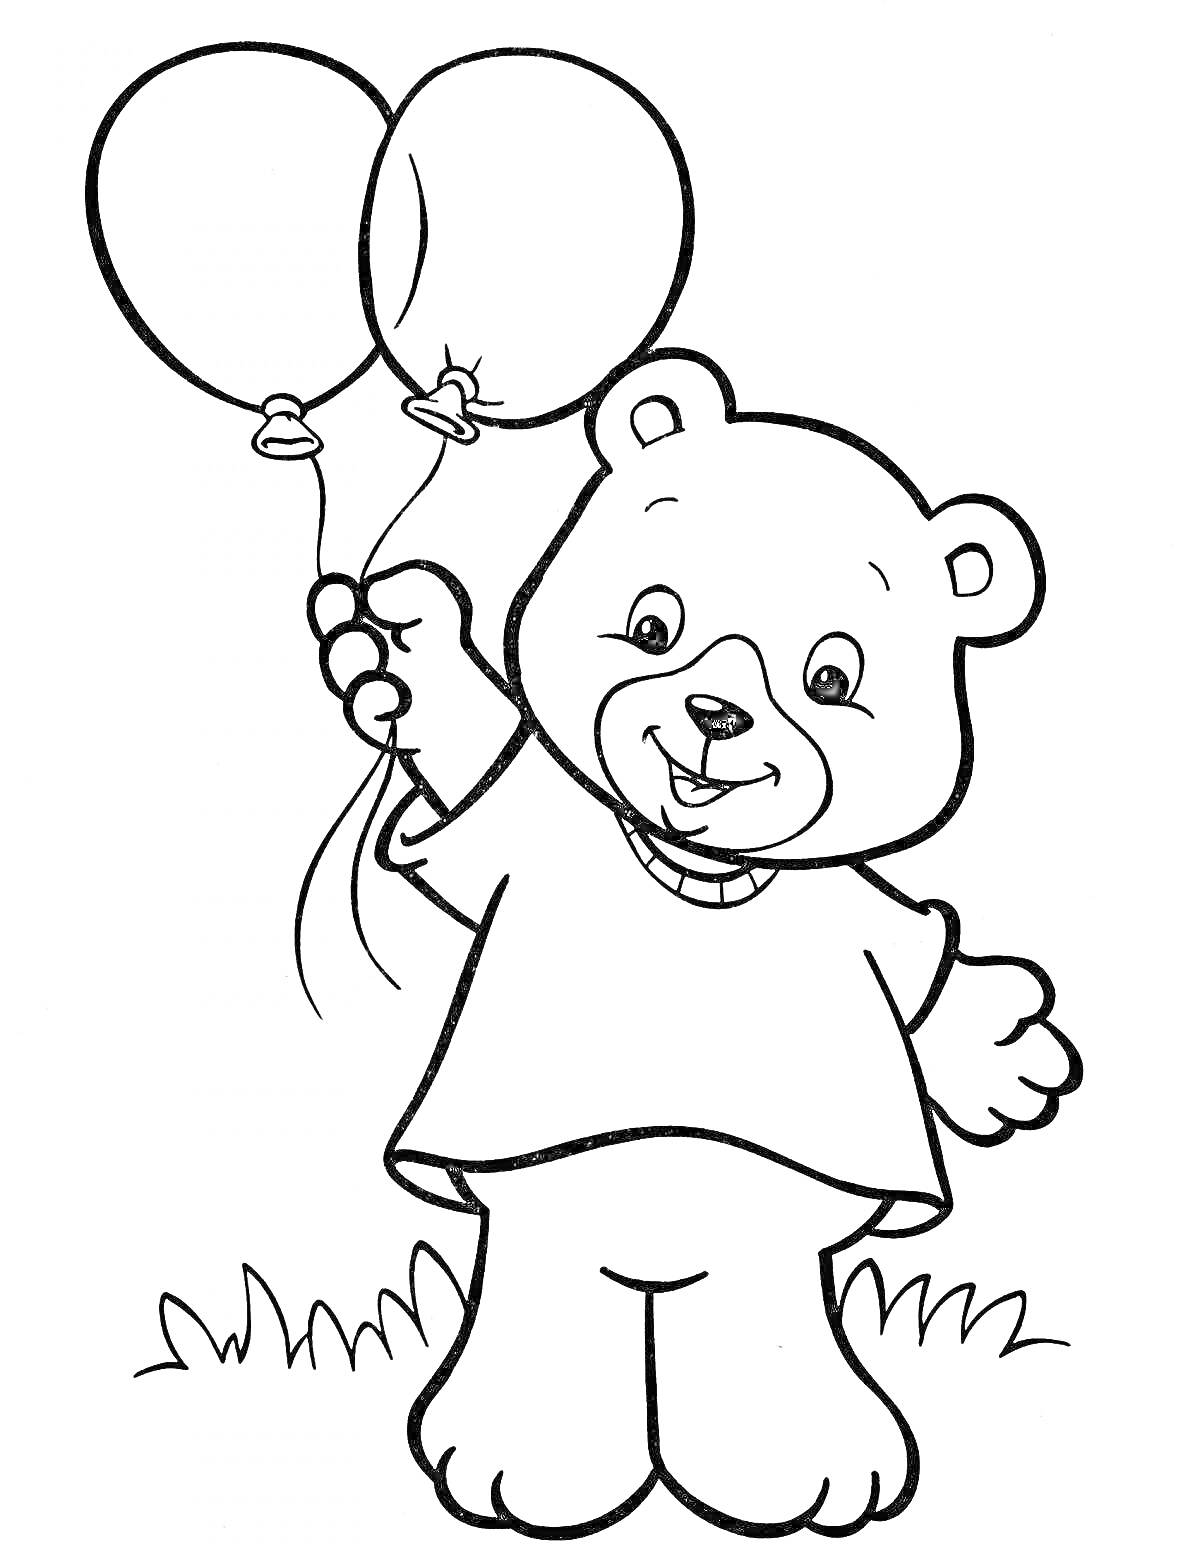 Раскраска Медвежонок с воздушными шарами на траве